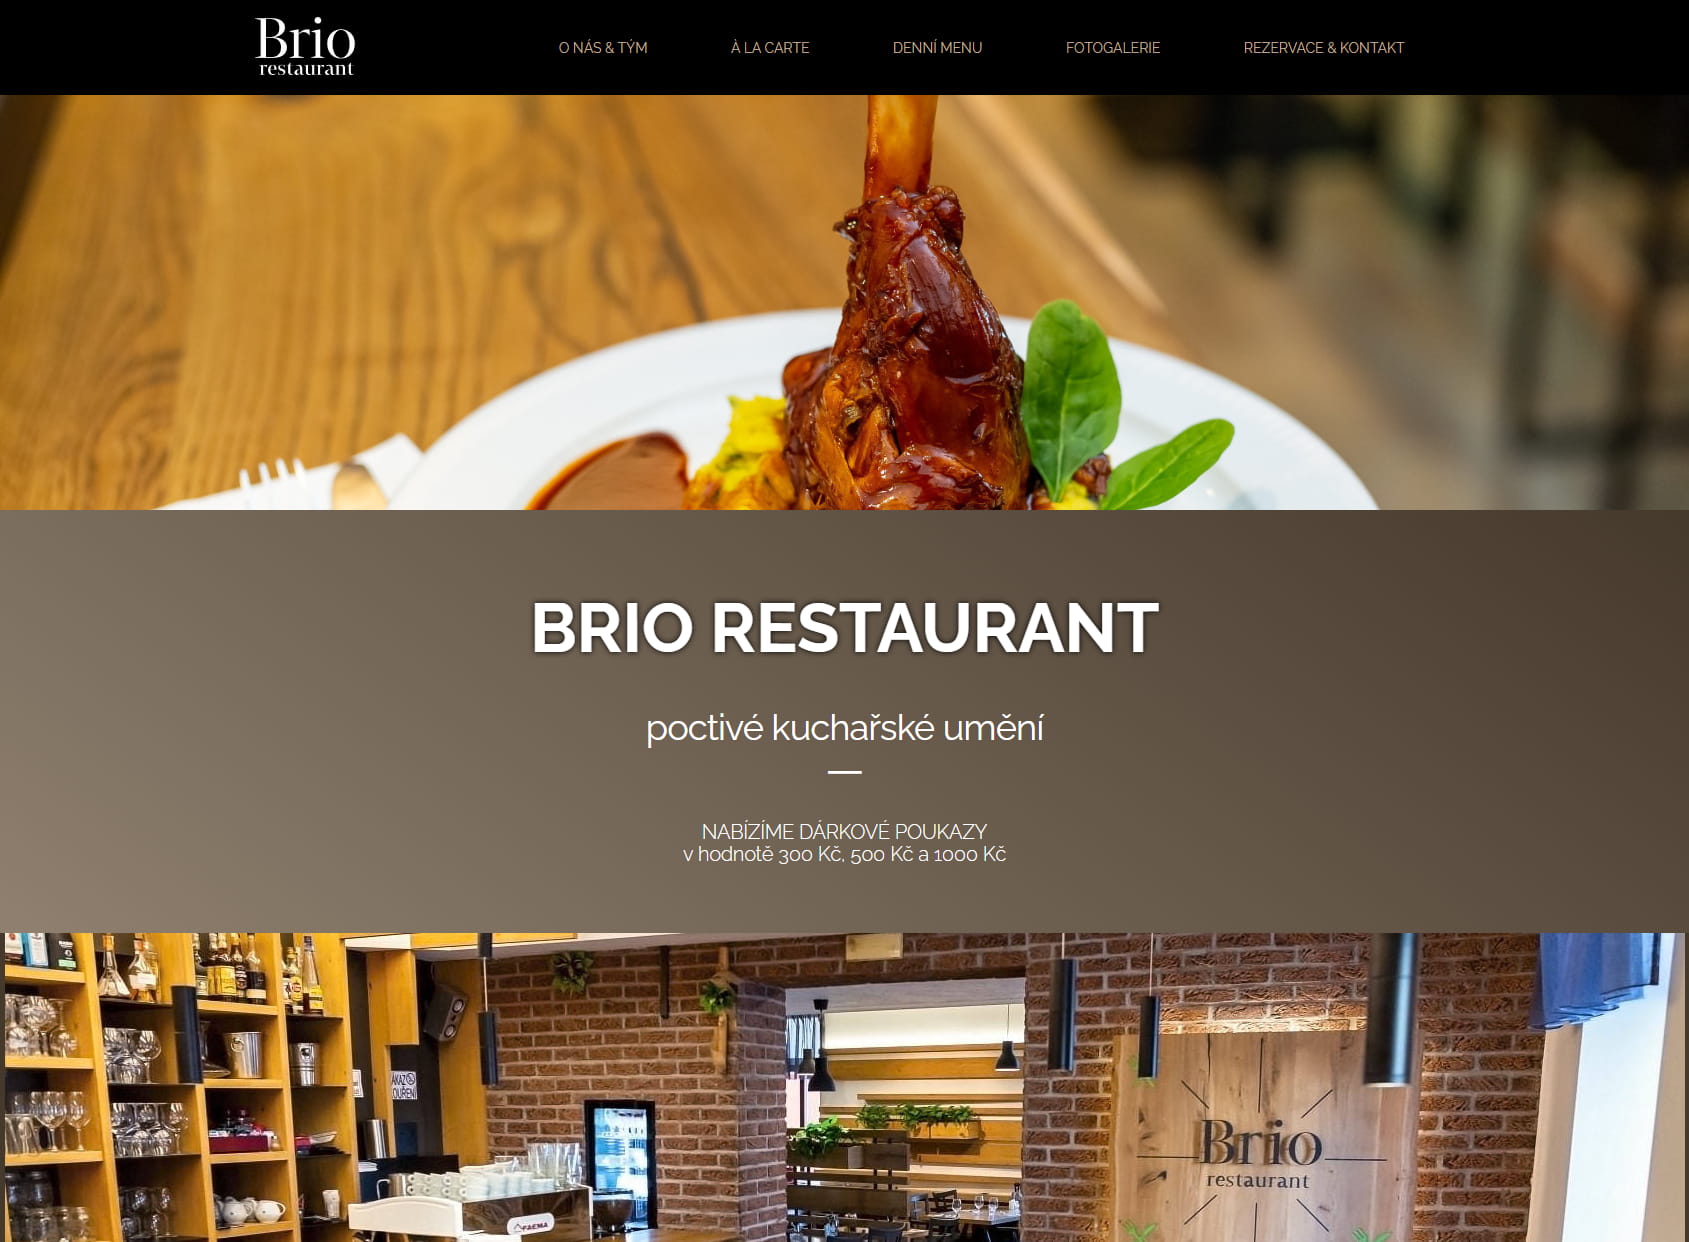 BRIO Restaurant